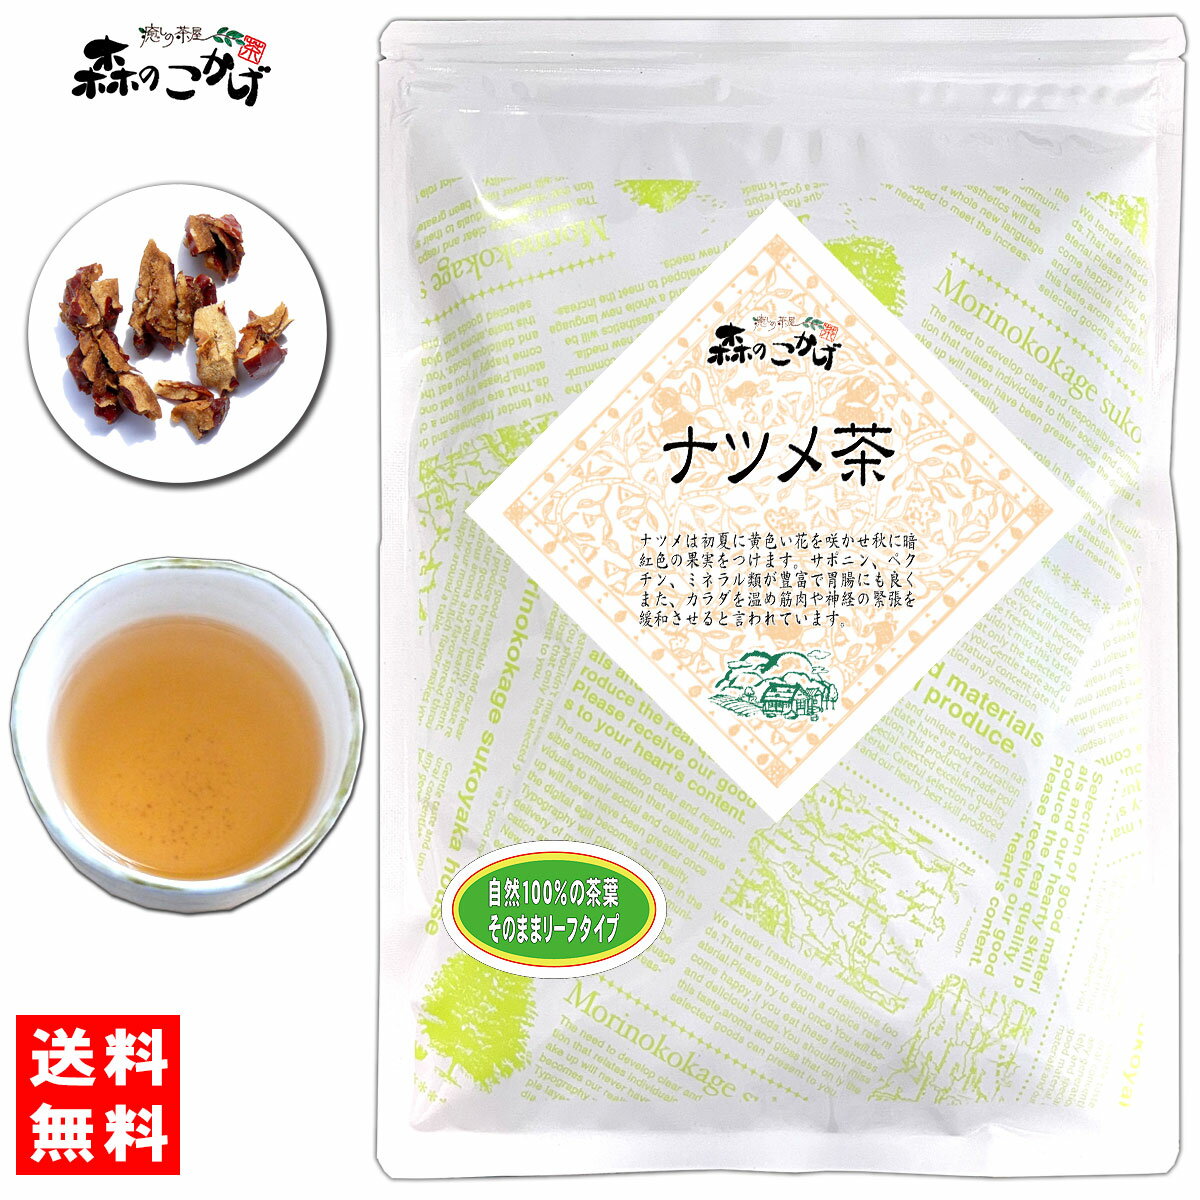 5【送料無料】 なつめ茶 (130g) 茶葉 